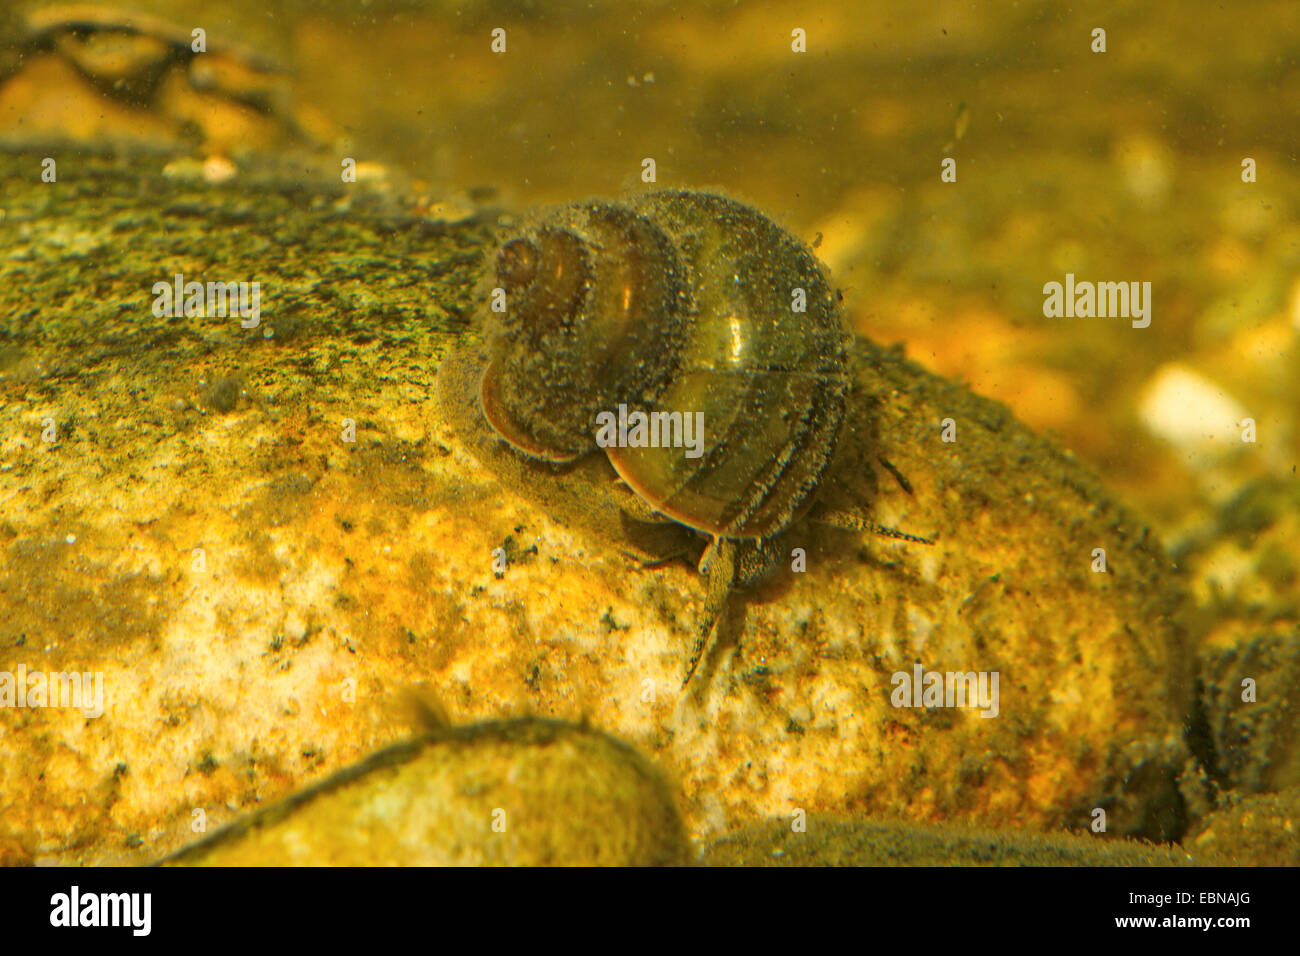 Escargots de rivière (Viviparus spec.), nourrir les algues d'une pierre Banque D'Images